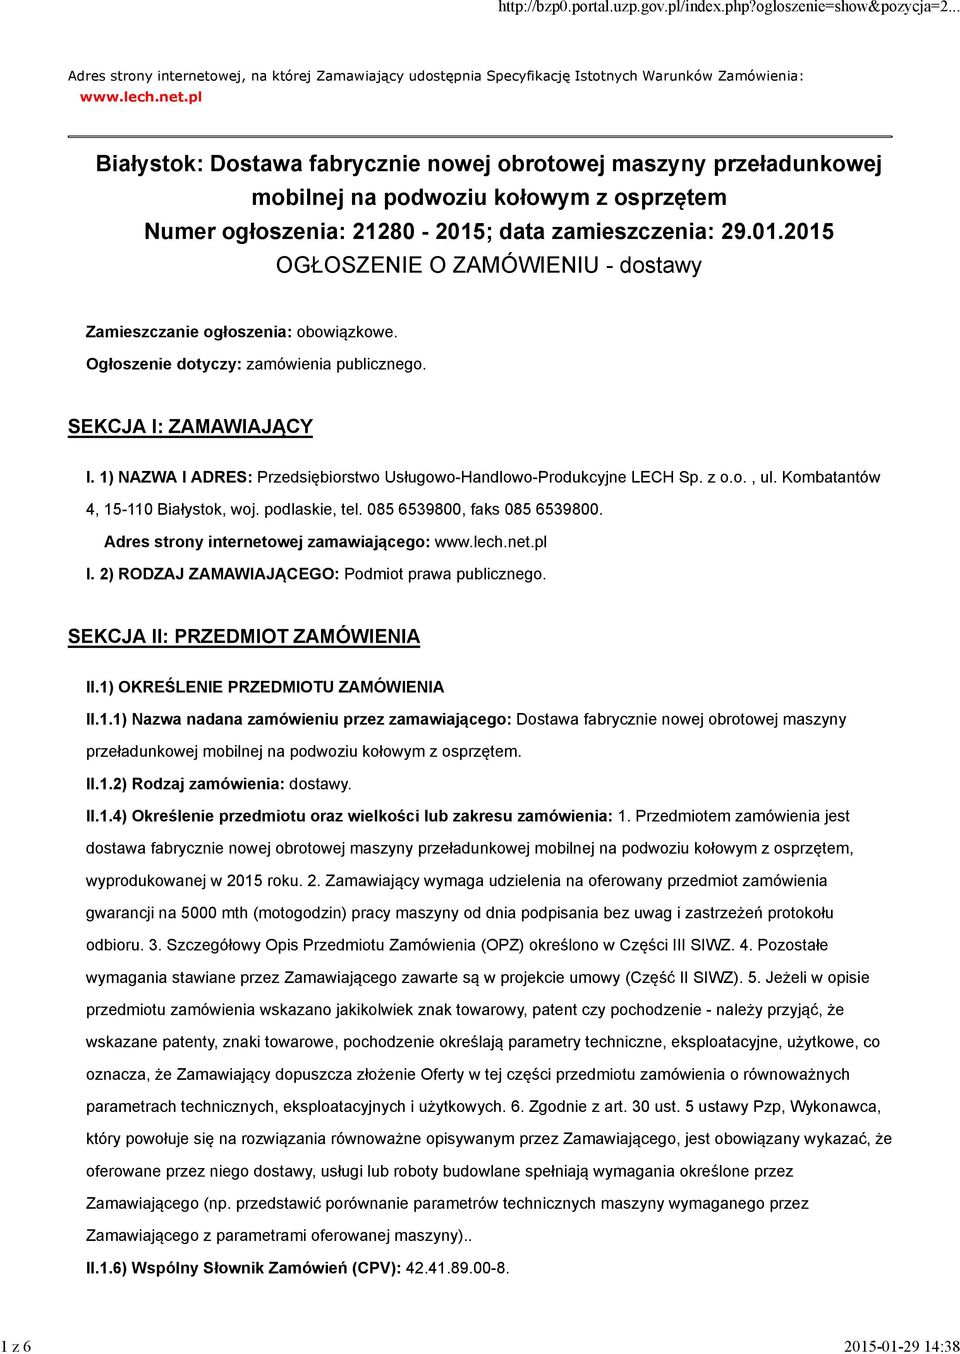 pl Białystok: Dostawa fabrycznie nowej obrotowej maszyny przeładunkowej mobilnej na podwoziu kołowym z osprzętem Numer ogłoszenia: 21280-2015